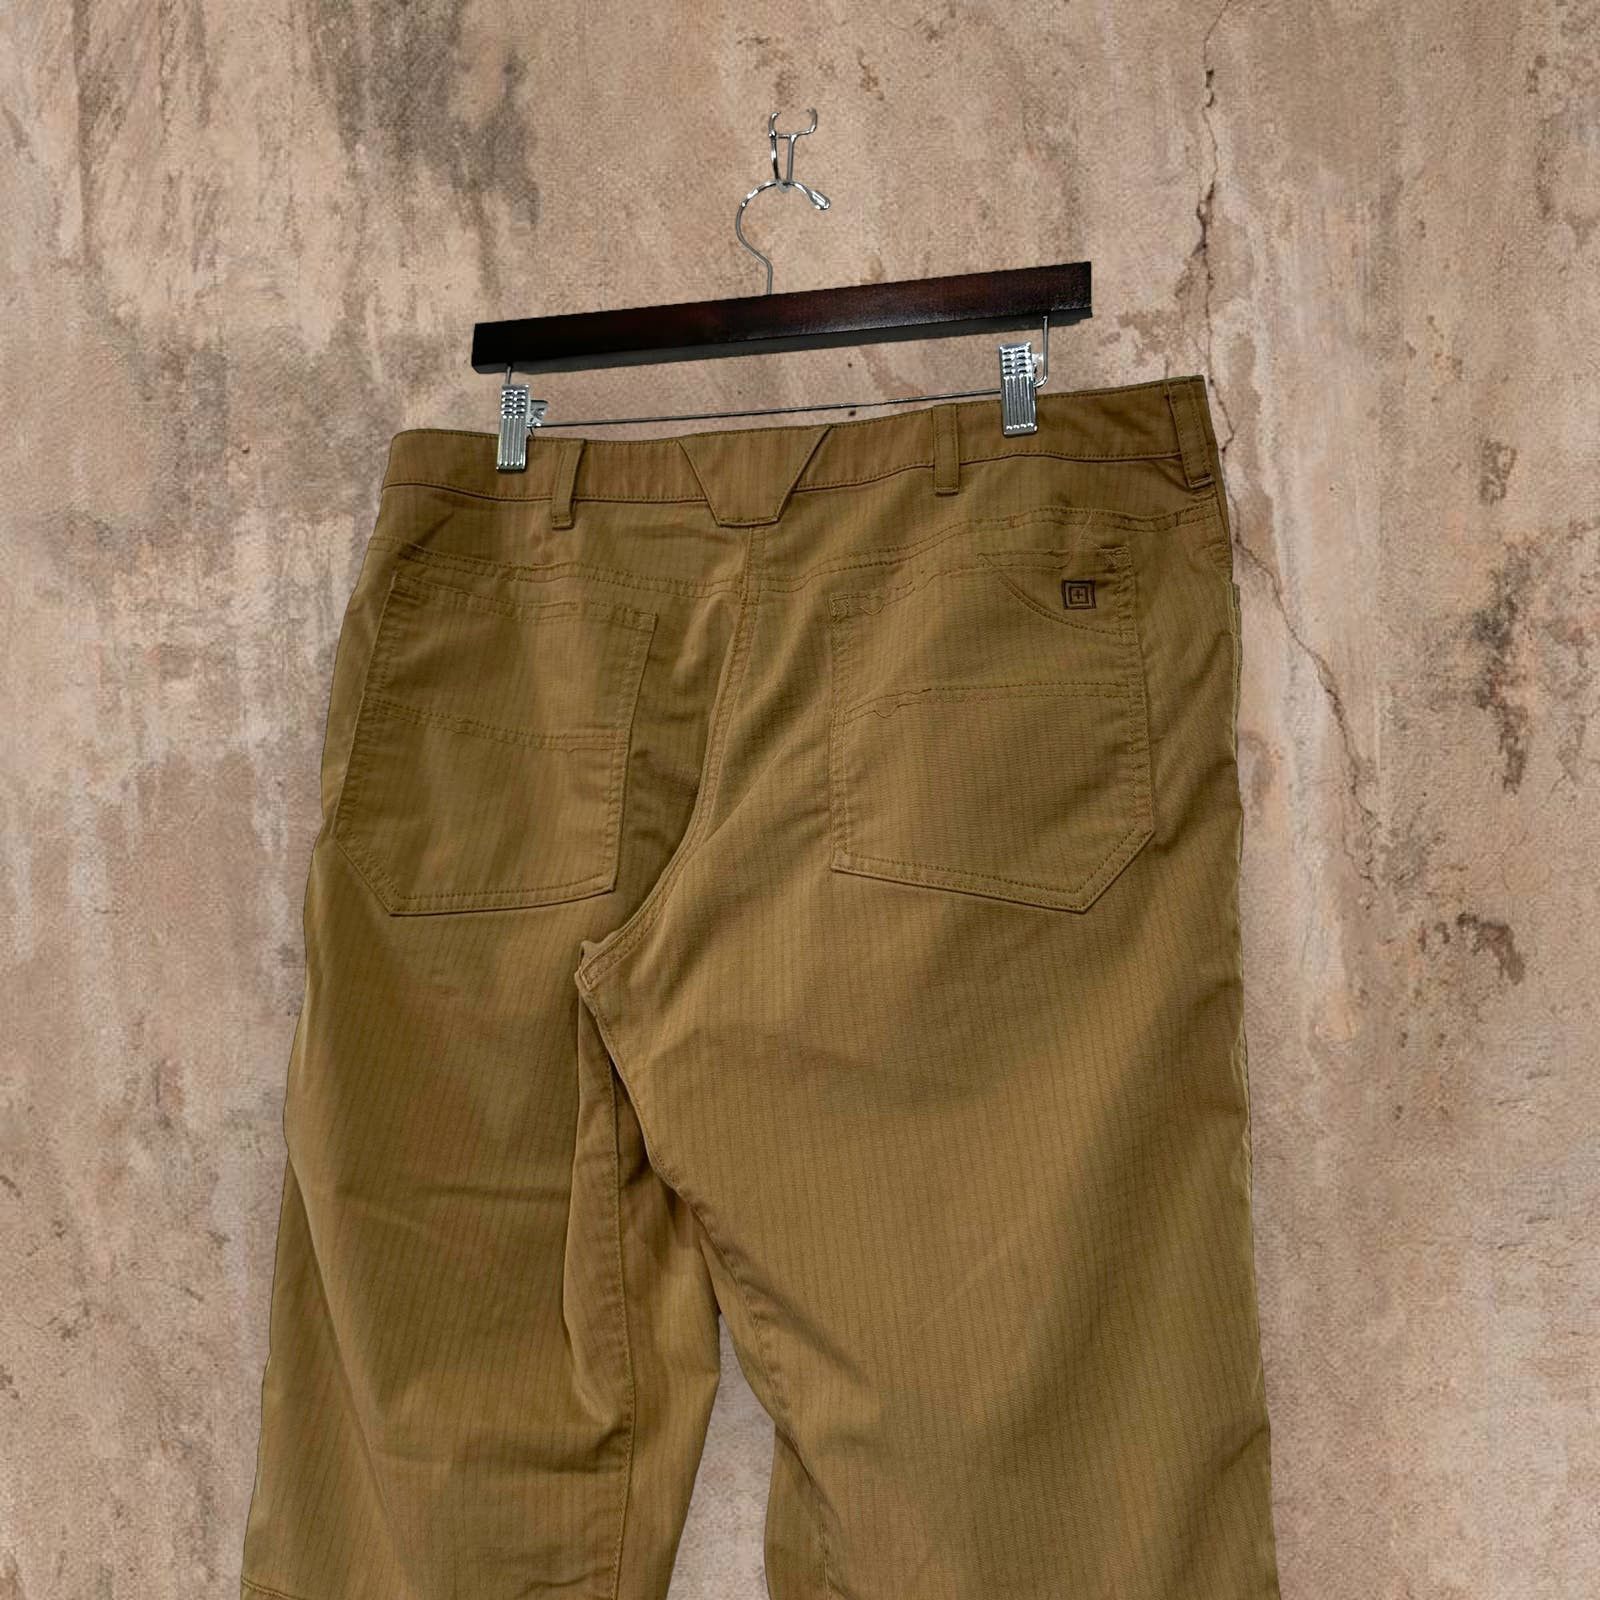 Vintage Vintage 5.11 Tactical Pants Tan Baggy Fit Cargos 90s Size US 36 / EU 52 - 2 Preview